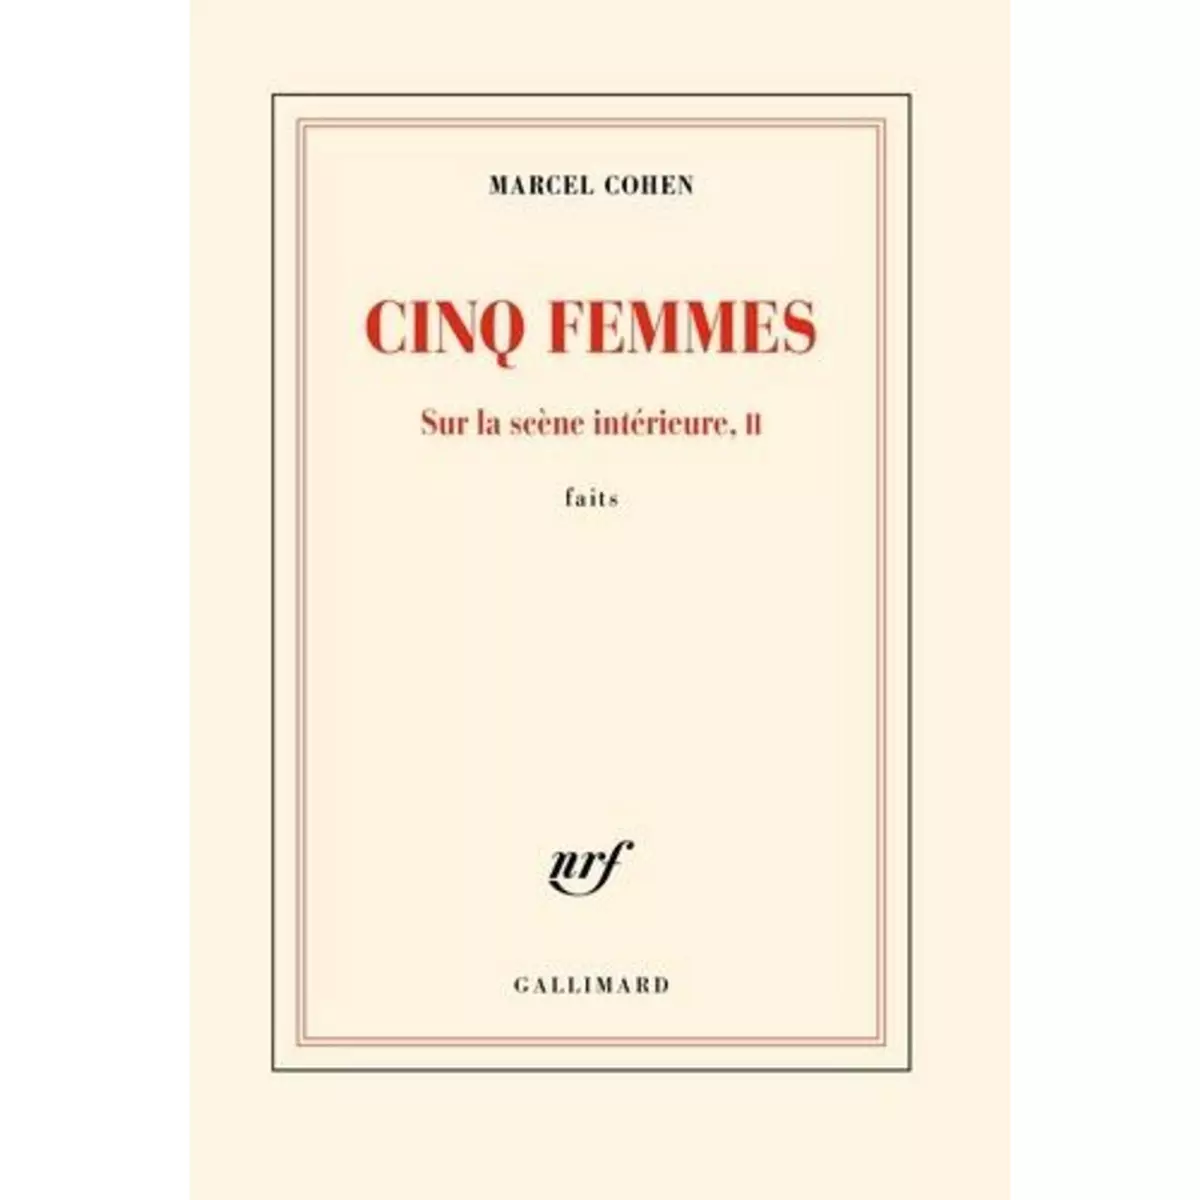  CINQ FEMMES. SUR LA SCENE INTERIEURE, FAITS TOME 2, Cohen Marcel